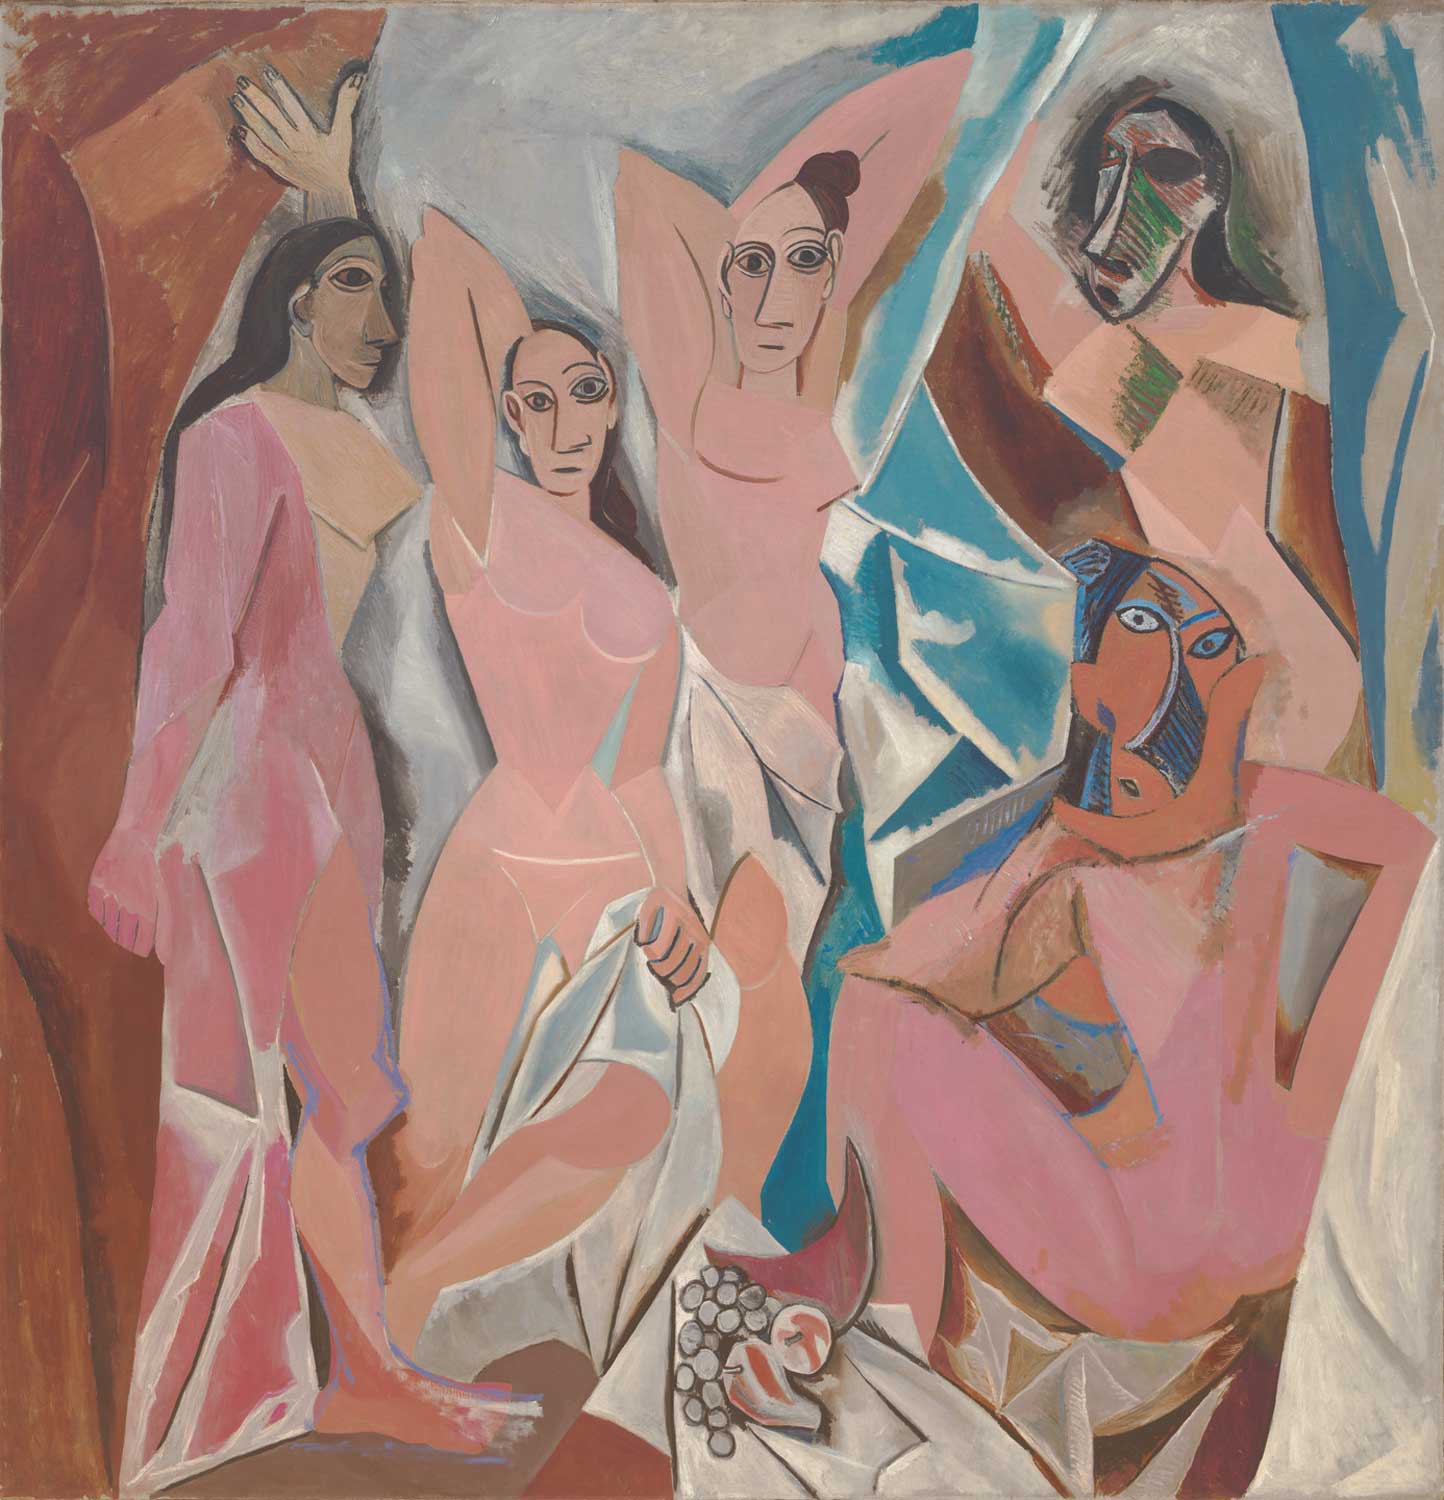 Les Demoiselles d’Avignon by Pablo Picasso, 1907 (image MoMA)]